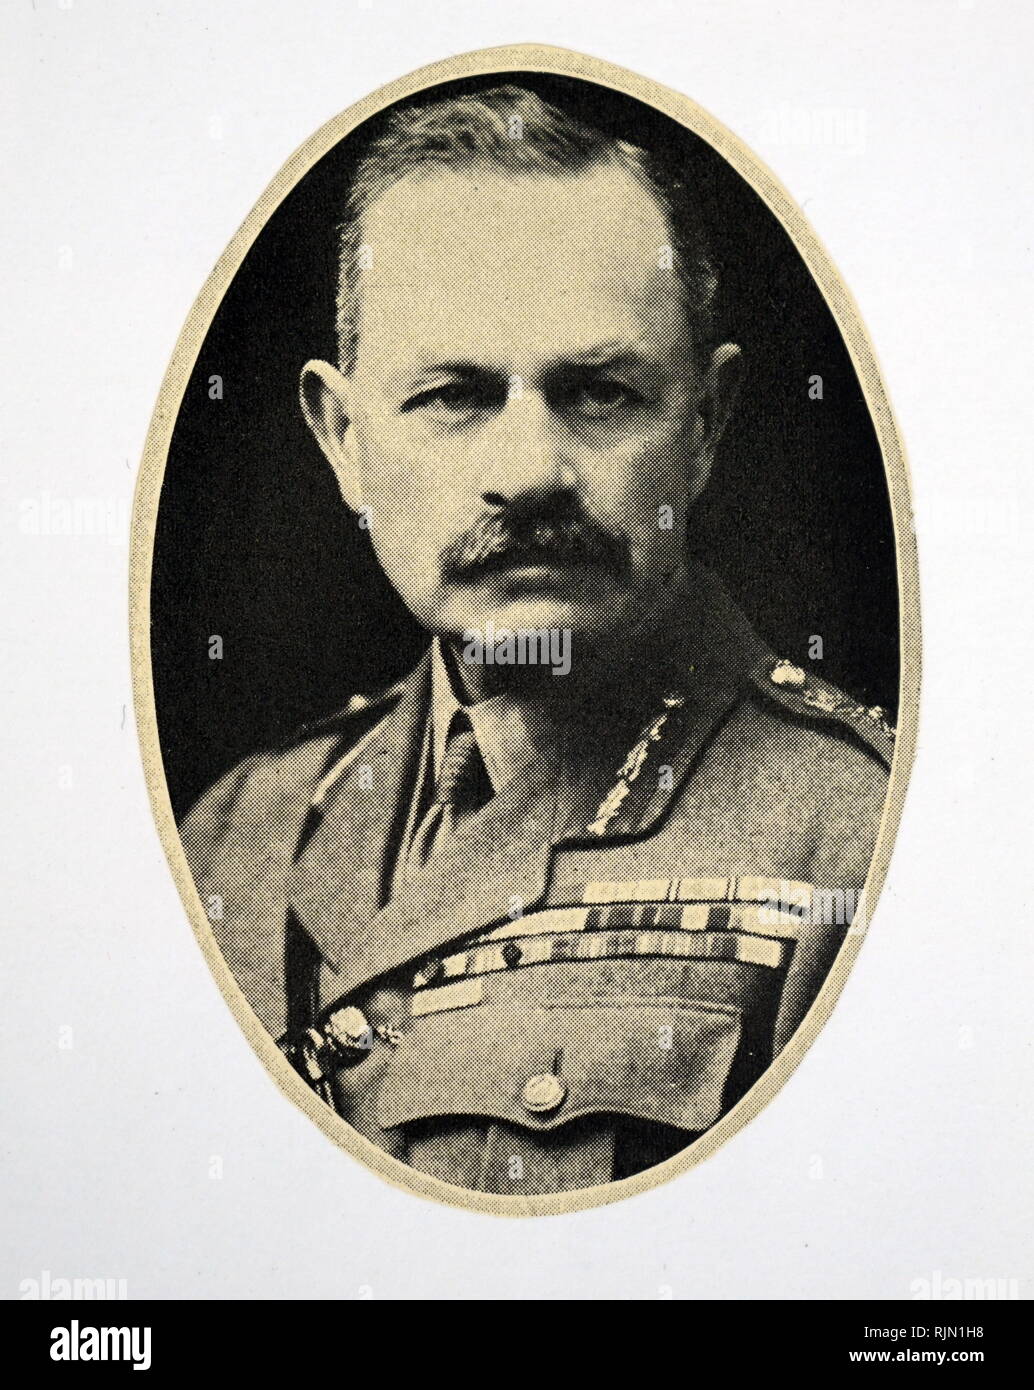 Signore Byng, (11 settembre 1862 - 6 giugno 1935), comandato truppe canadesi nella Prima Guerra Mondiale. Nel 1921 divenne governatore generale del Canada. Foto Stock